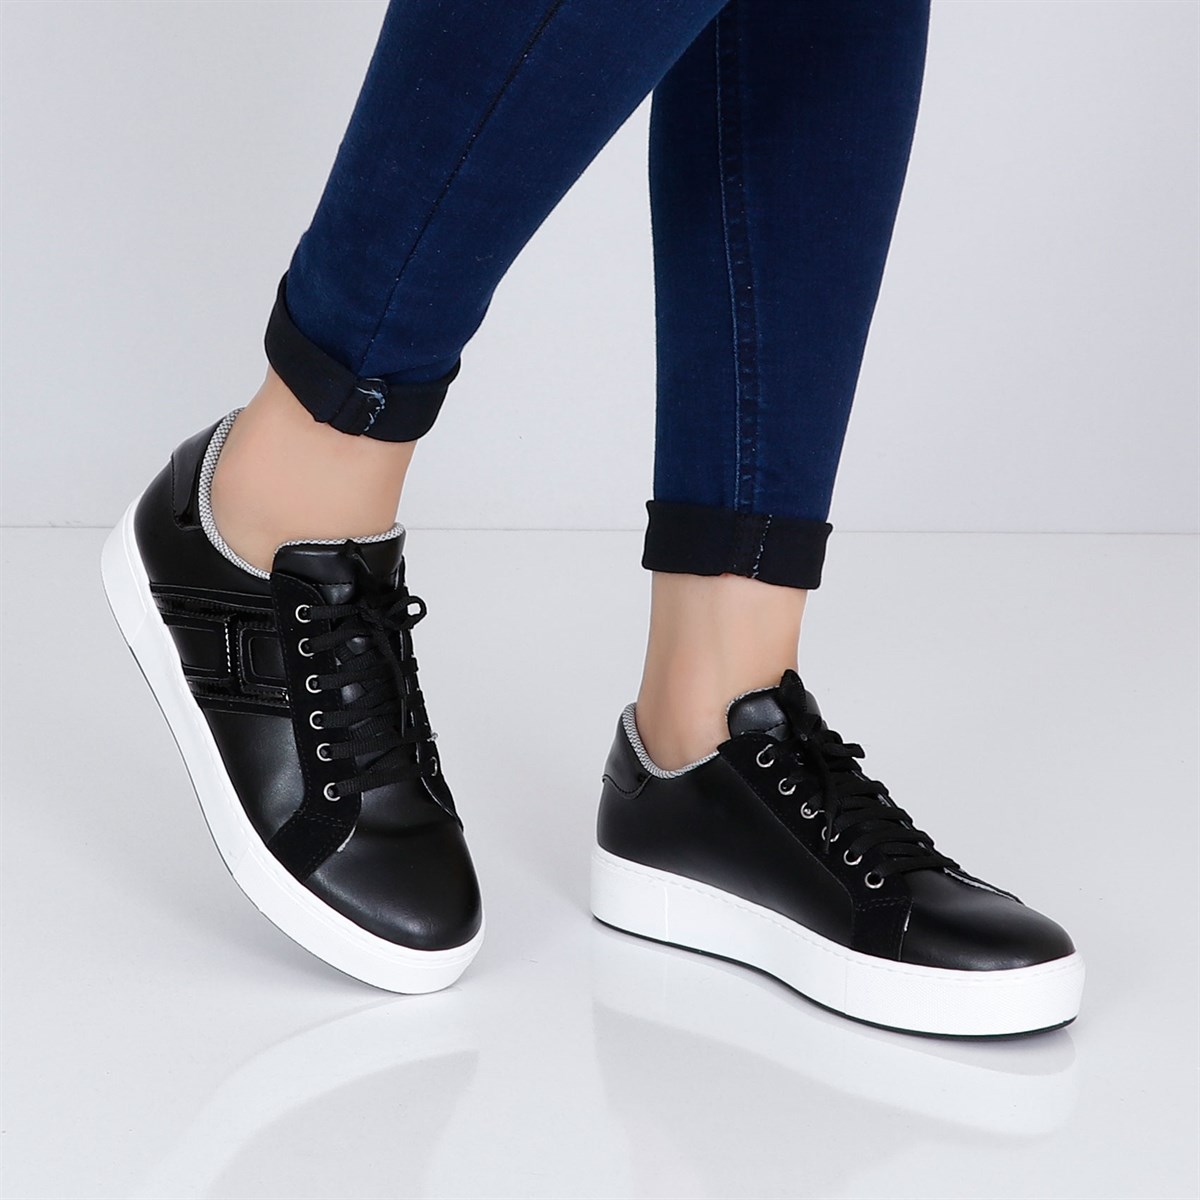 Siyah Düz Taban Kadın Spor Ayakkabı H1701 Fiyatı ve Modelleri